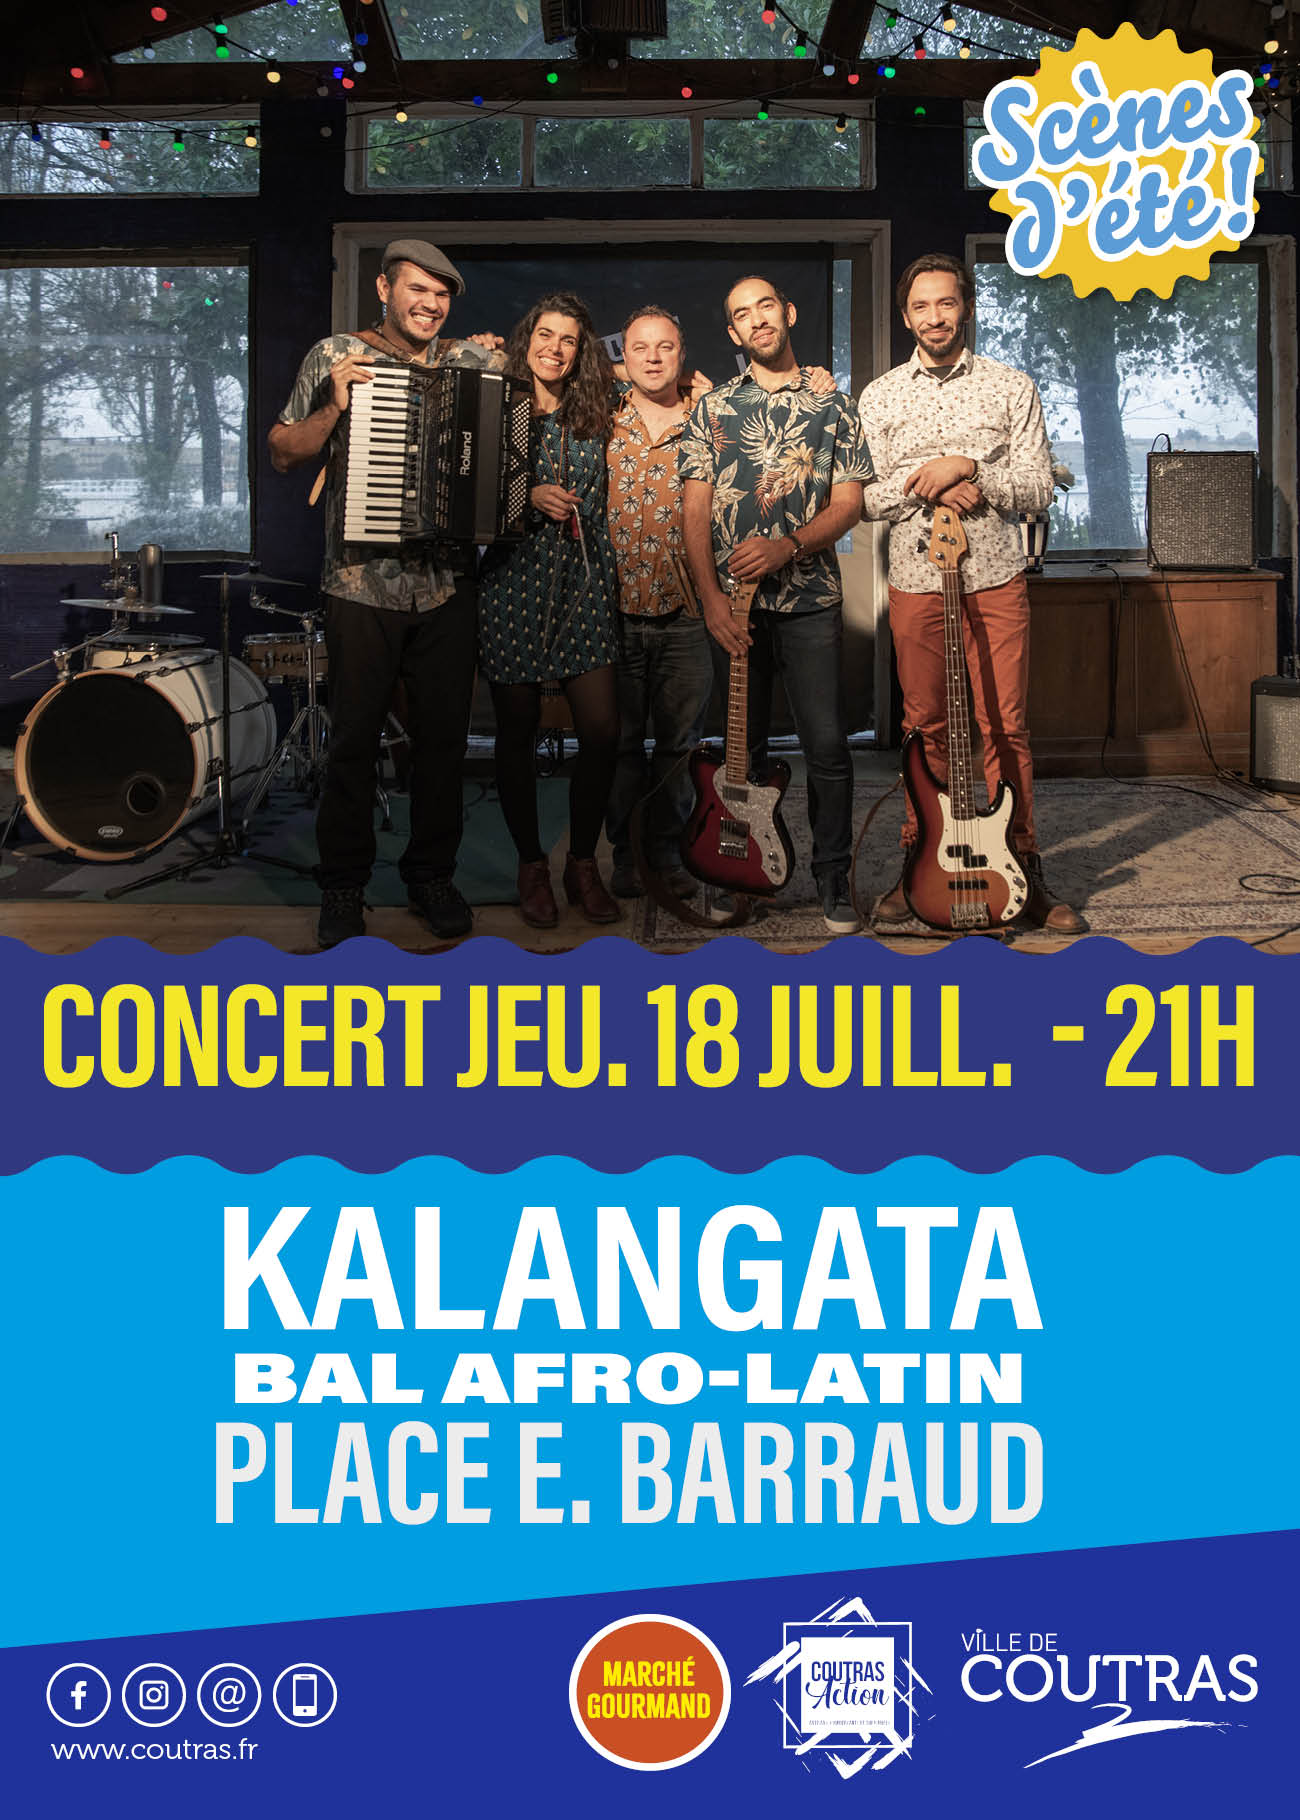 Concerts de l'été - Kalangata